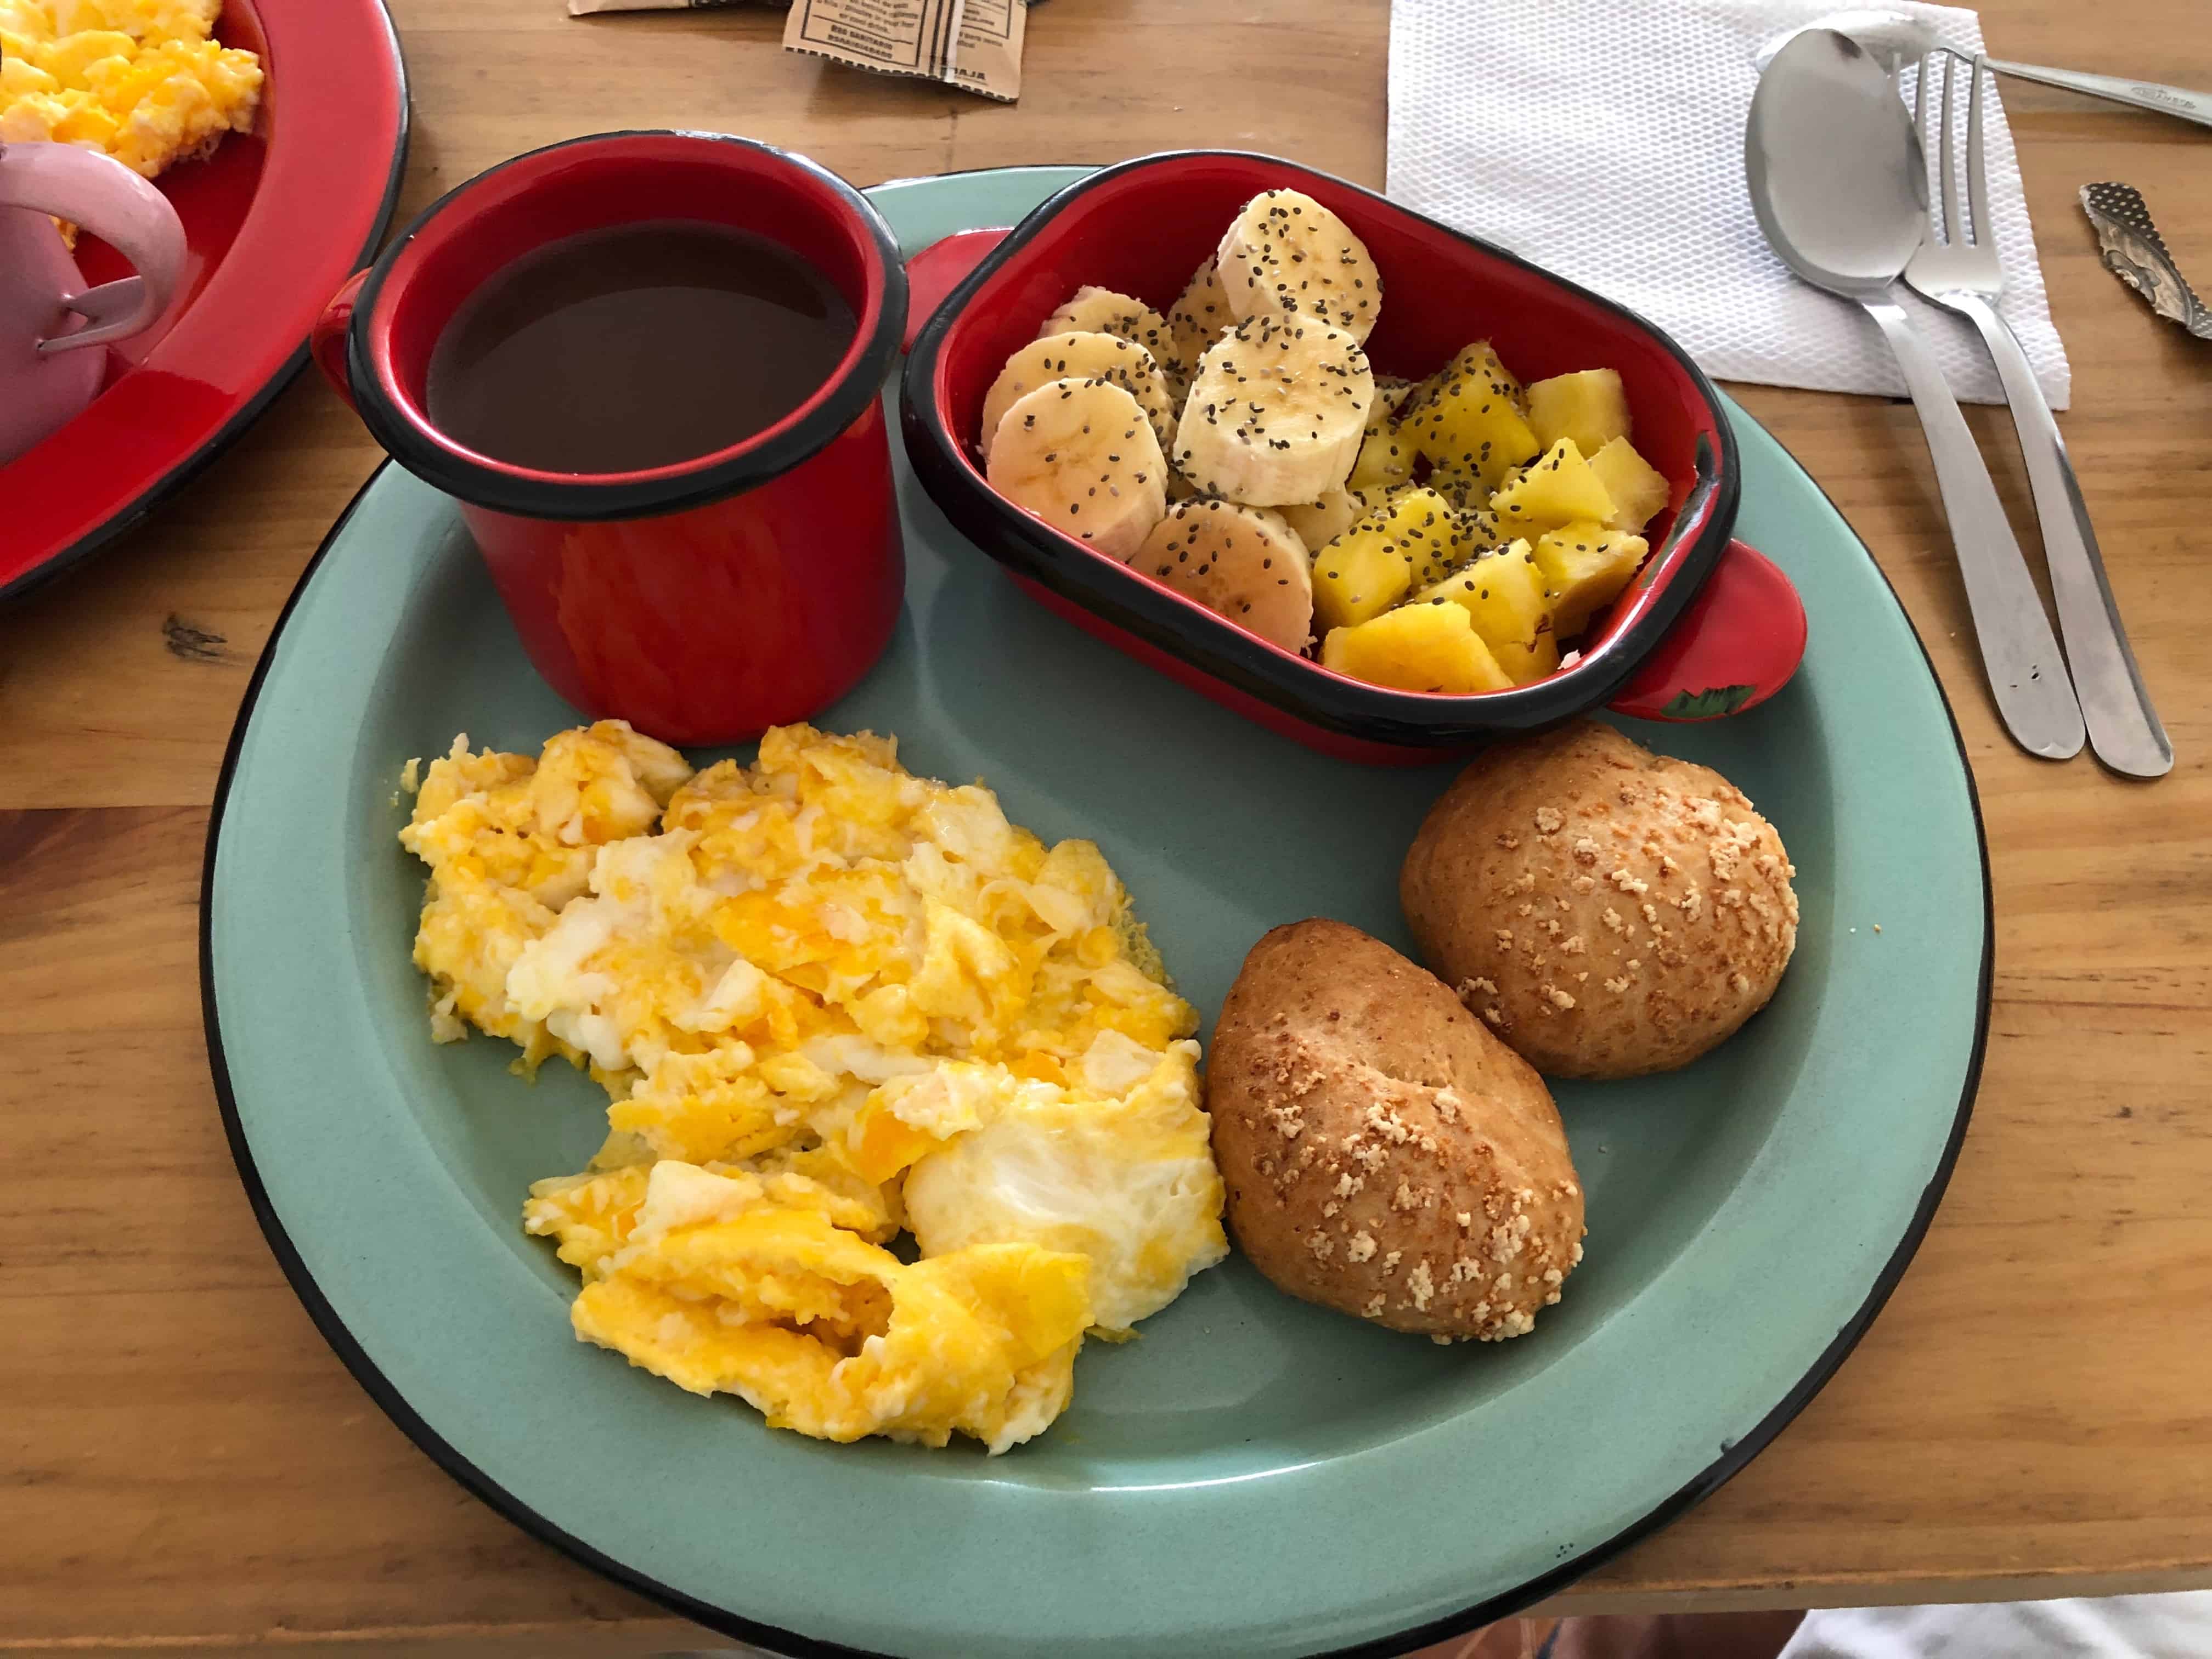 Breakfast at Hostería de Mi Pueblo